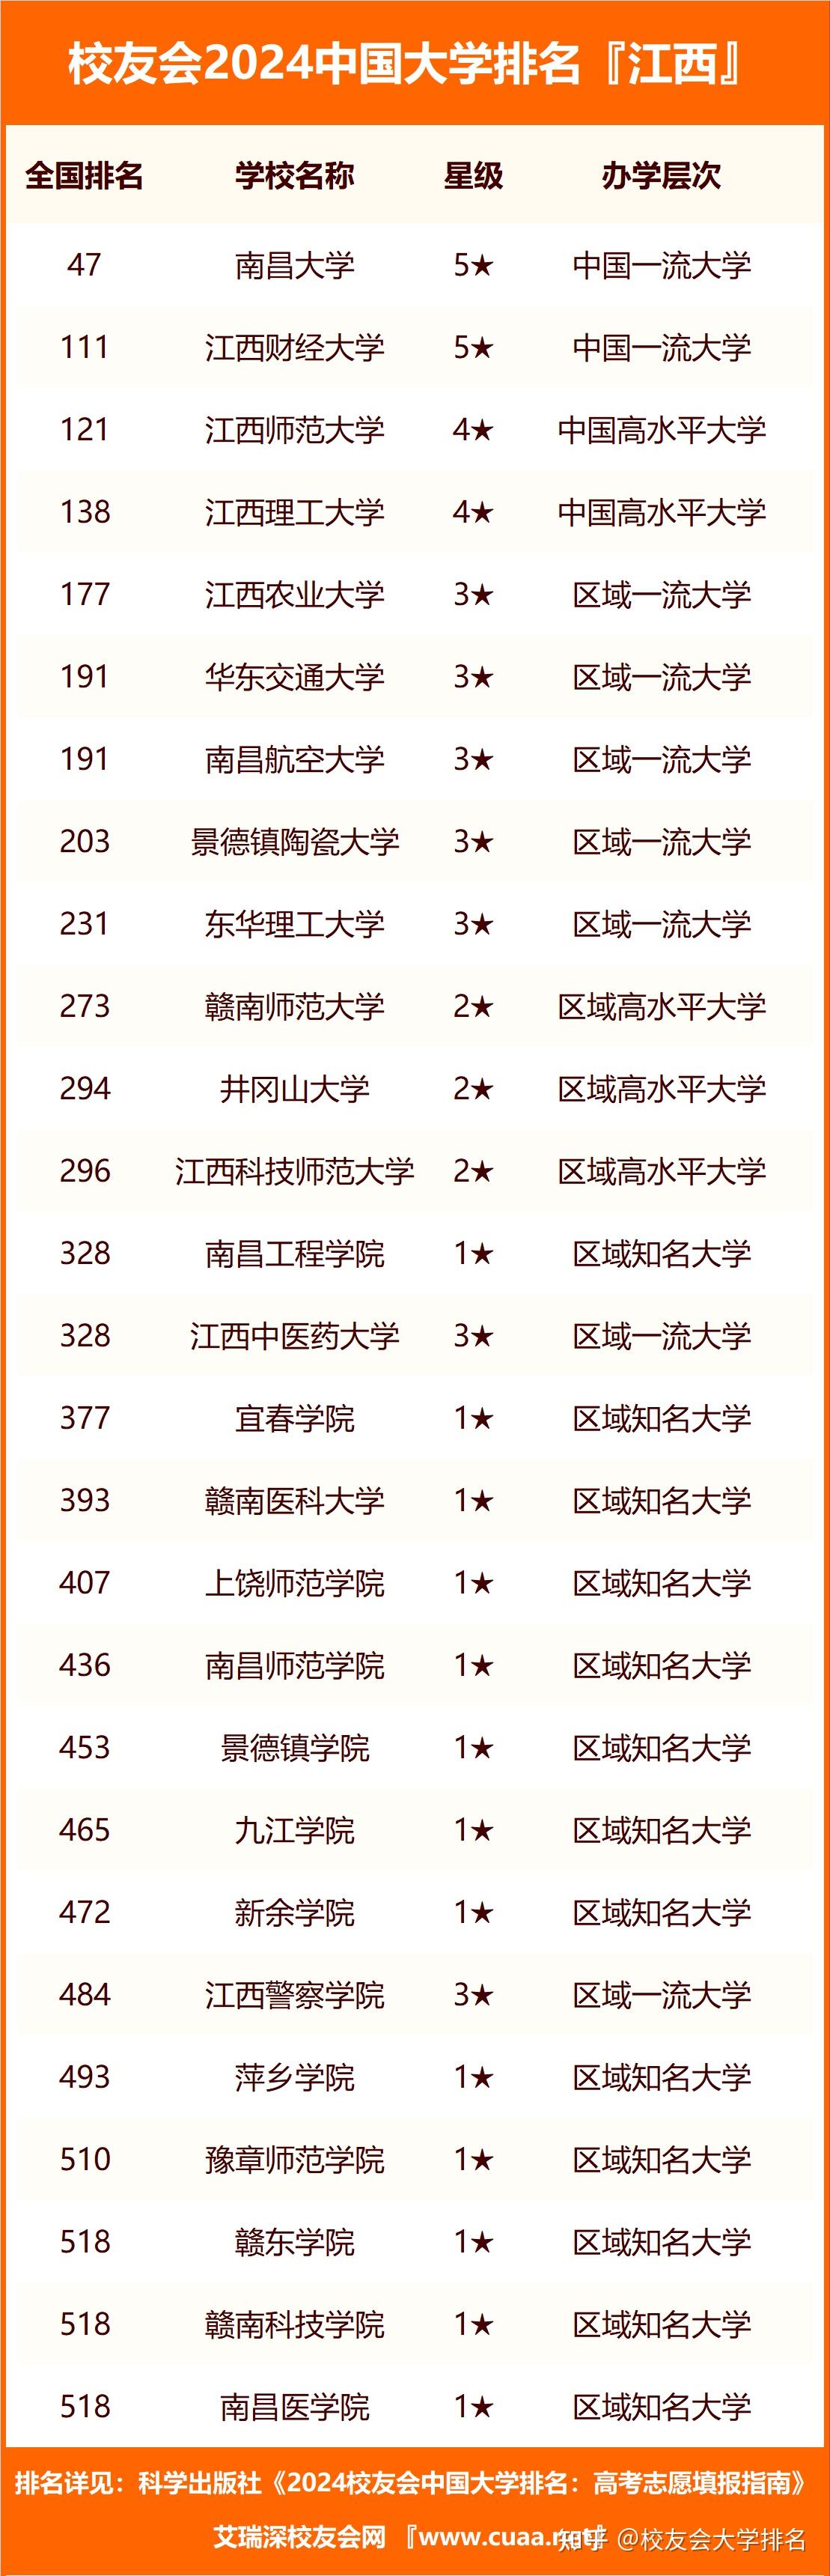 2024年江西省高职院校排名九江职业技术学院第一宜春职业技术学院第七